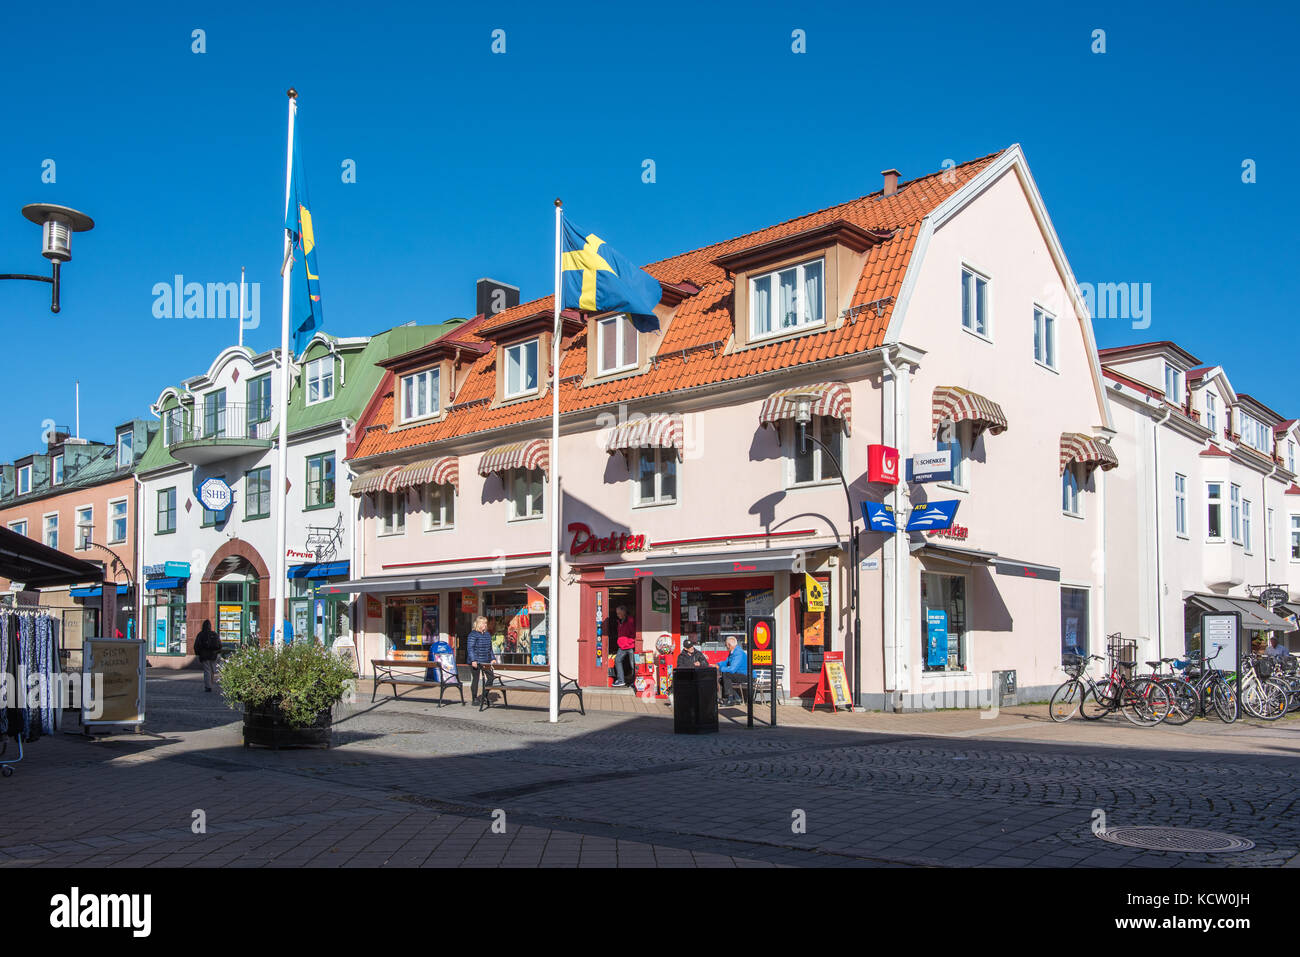 Die Hauptstraße in Borgholm auf der schwedischen Ostseeinsel Oland. Borgholm ist eine kleine Stadt mit 4500 Einwohnern und immer noch die größte Stadt in Oland Stockfoto